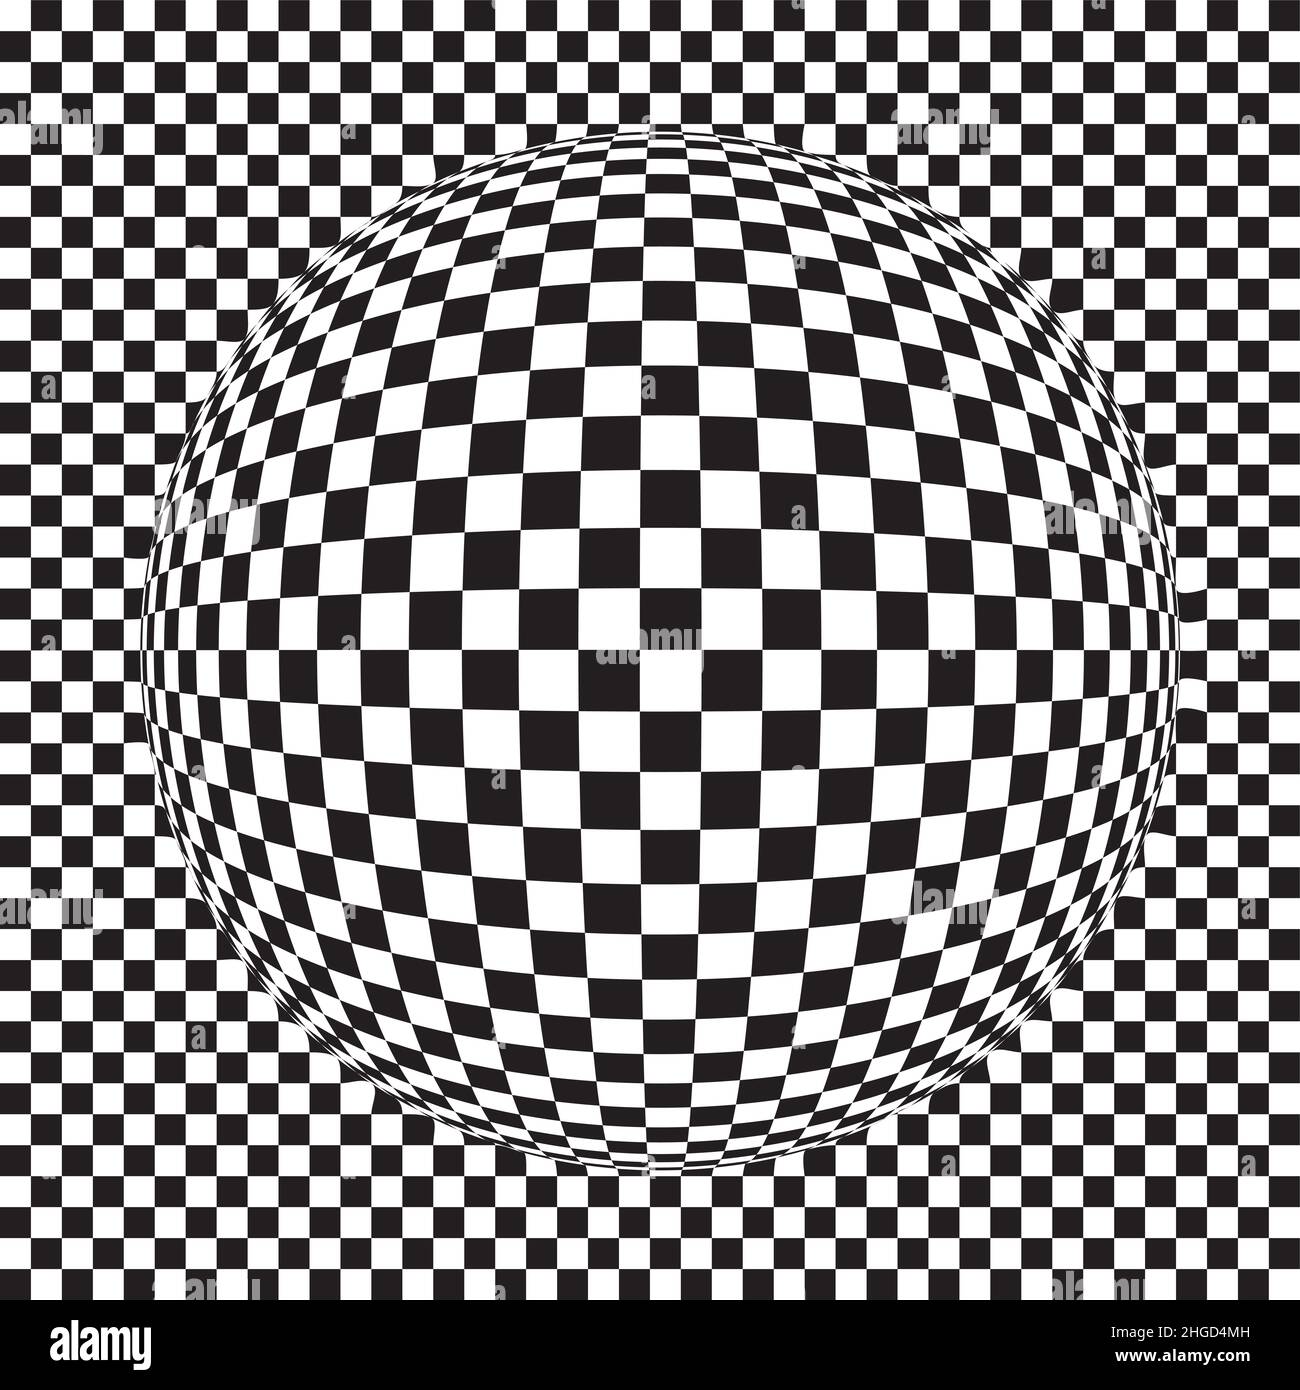 Cuadrados en la bola - ilustración del patrón cuadrado abstracto - figura geométrica Foto de stock